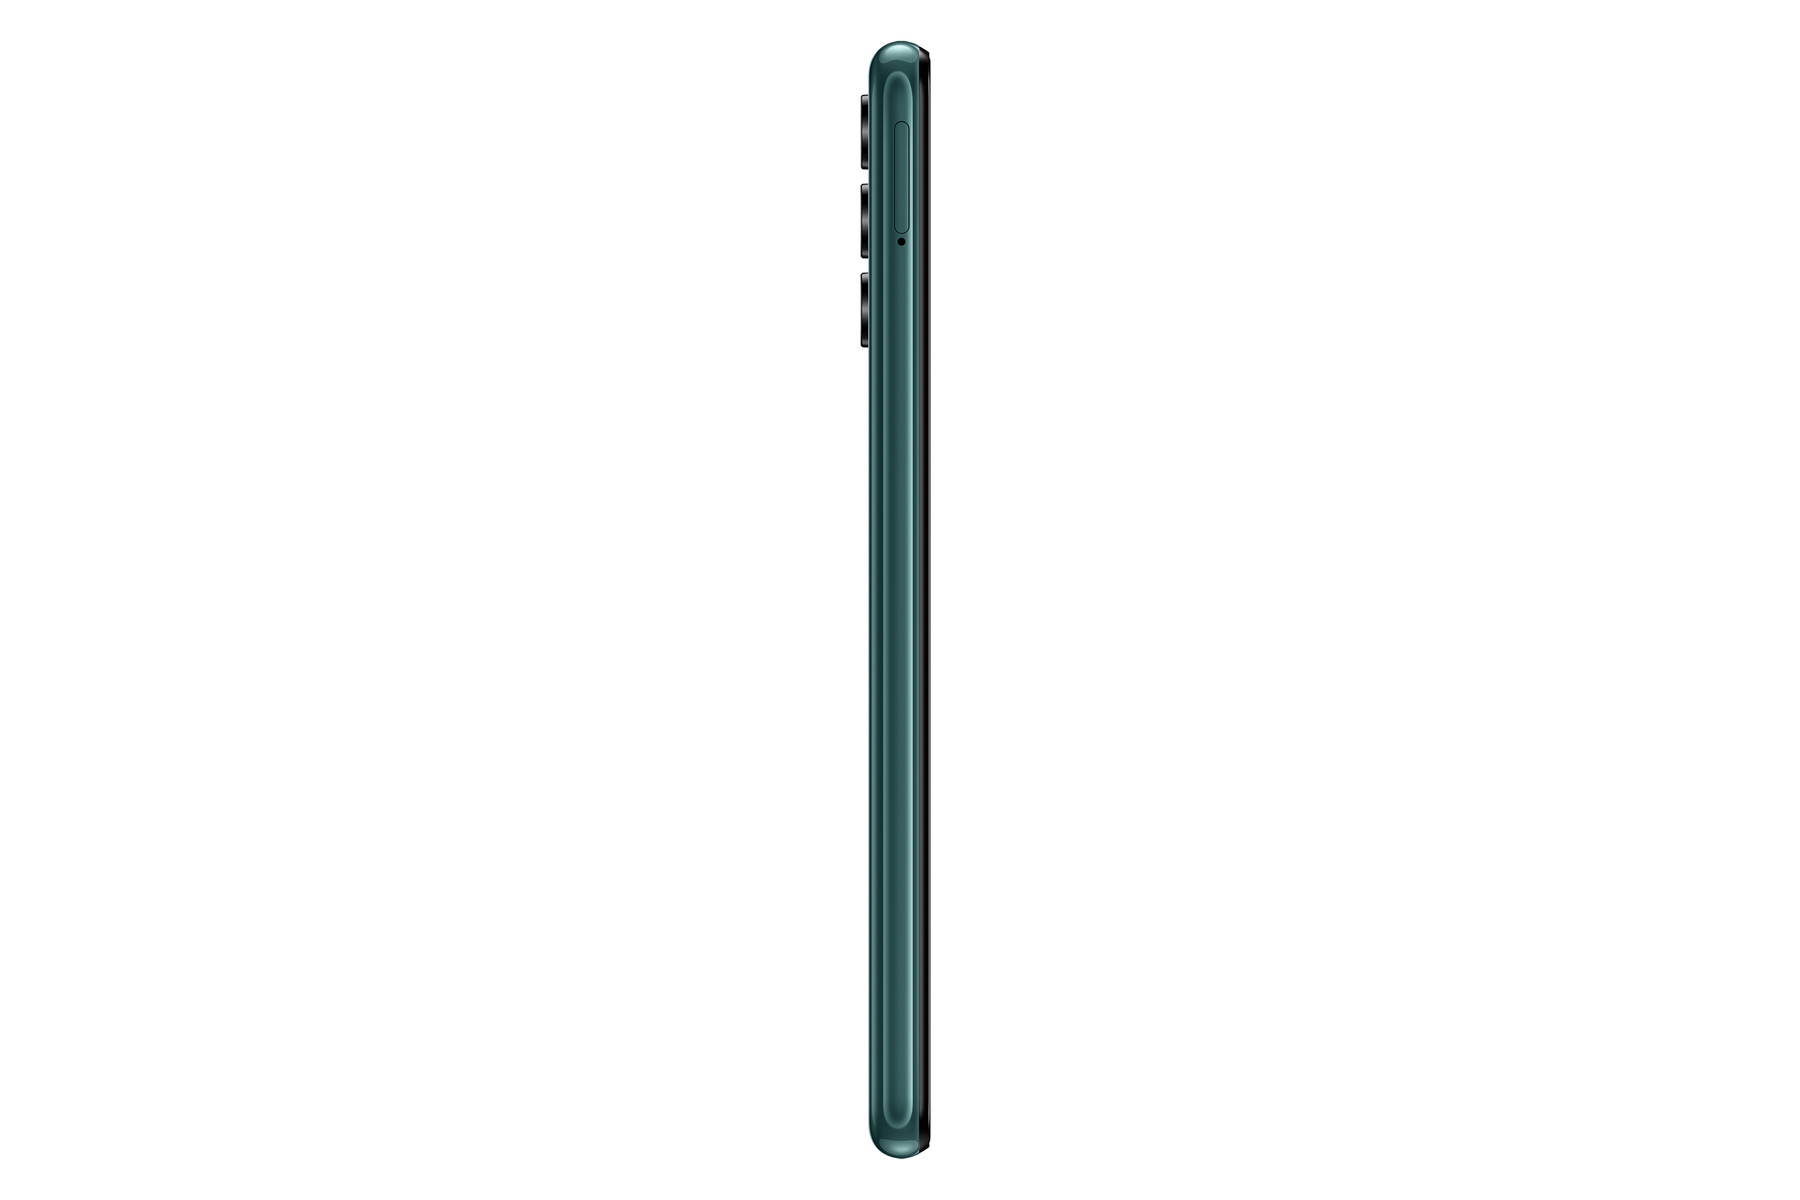 SAMSUNG green GB DS 32 32GB SIM Galaxy A04s Verde Dual